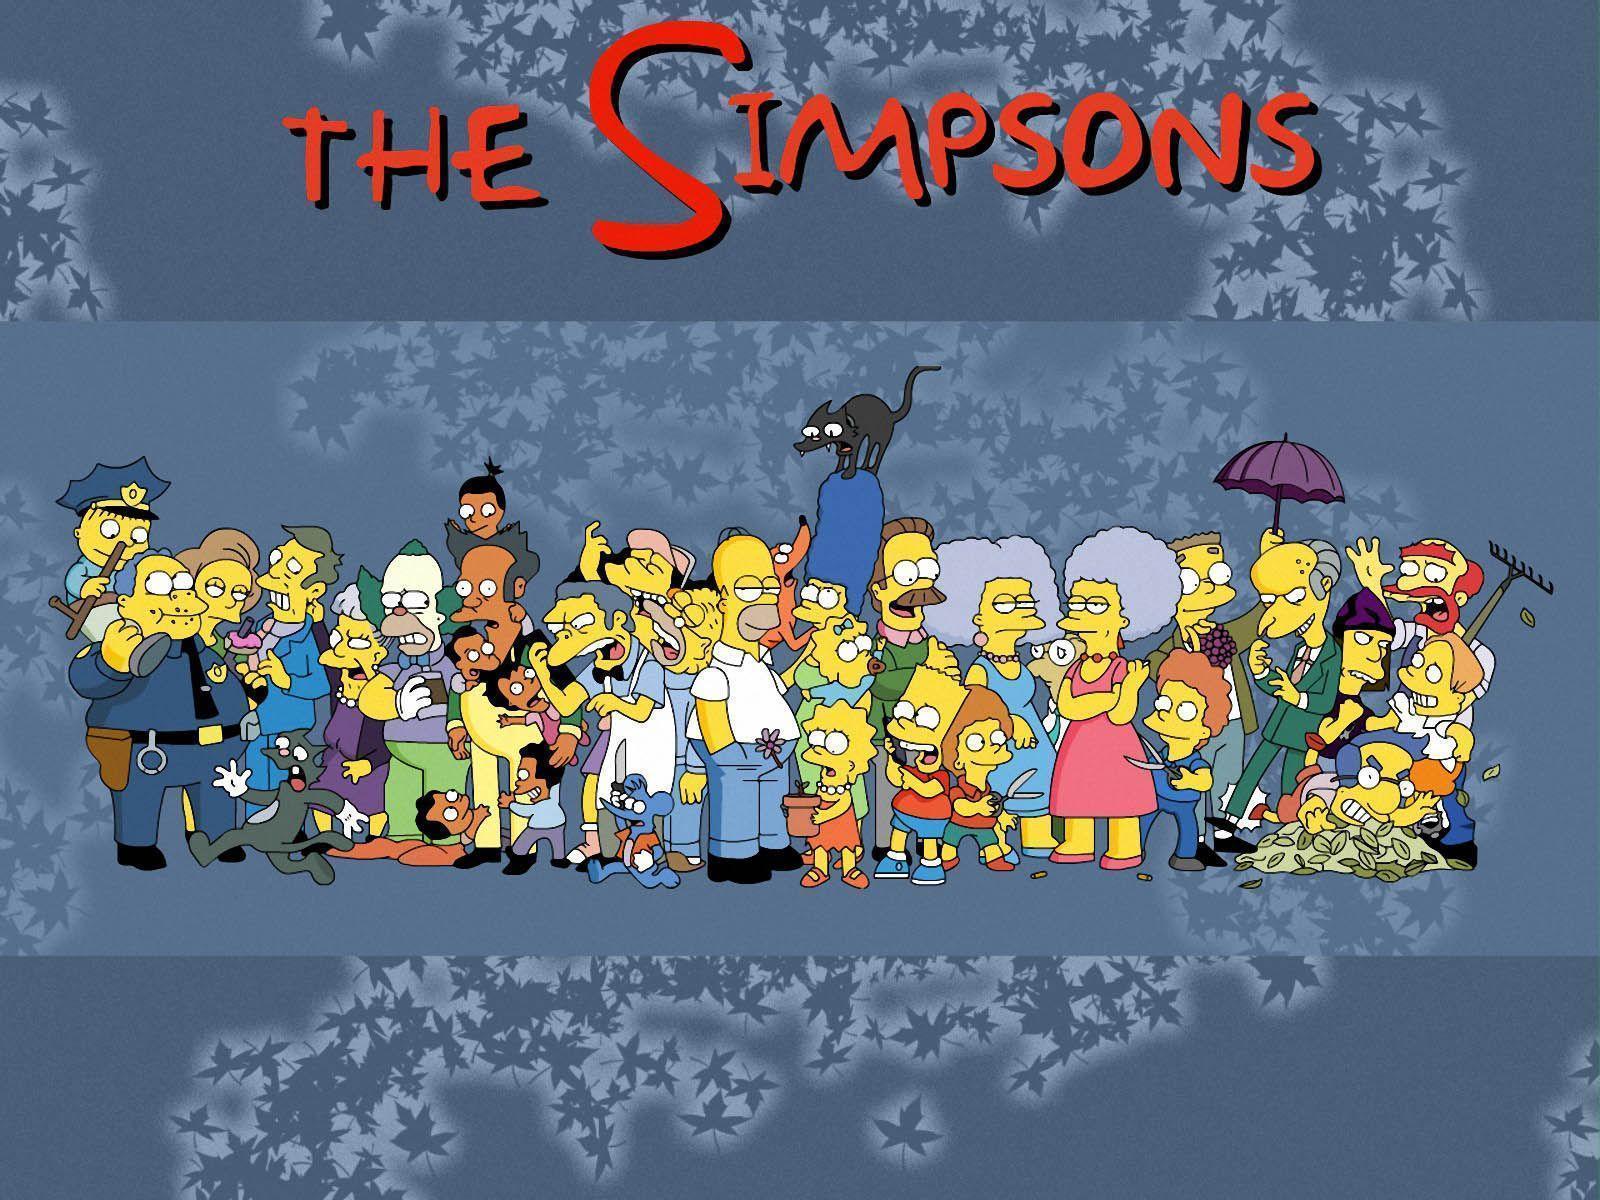 The Simpsons Wallpaper, The Simpsons Wallpaper